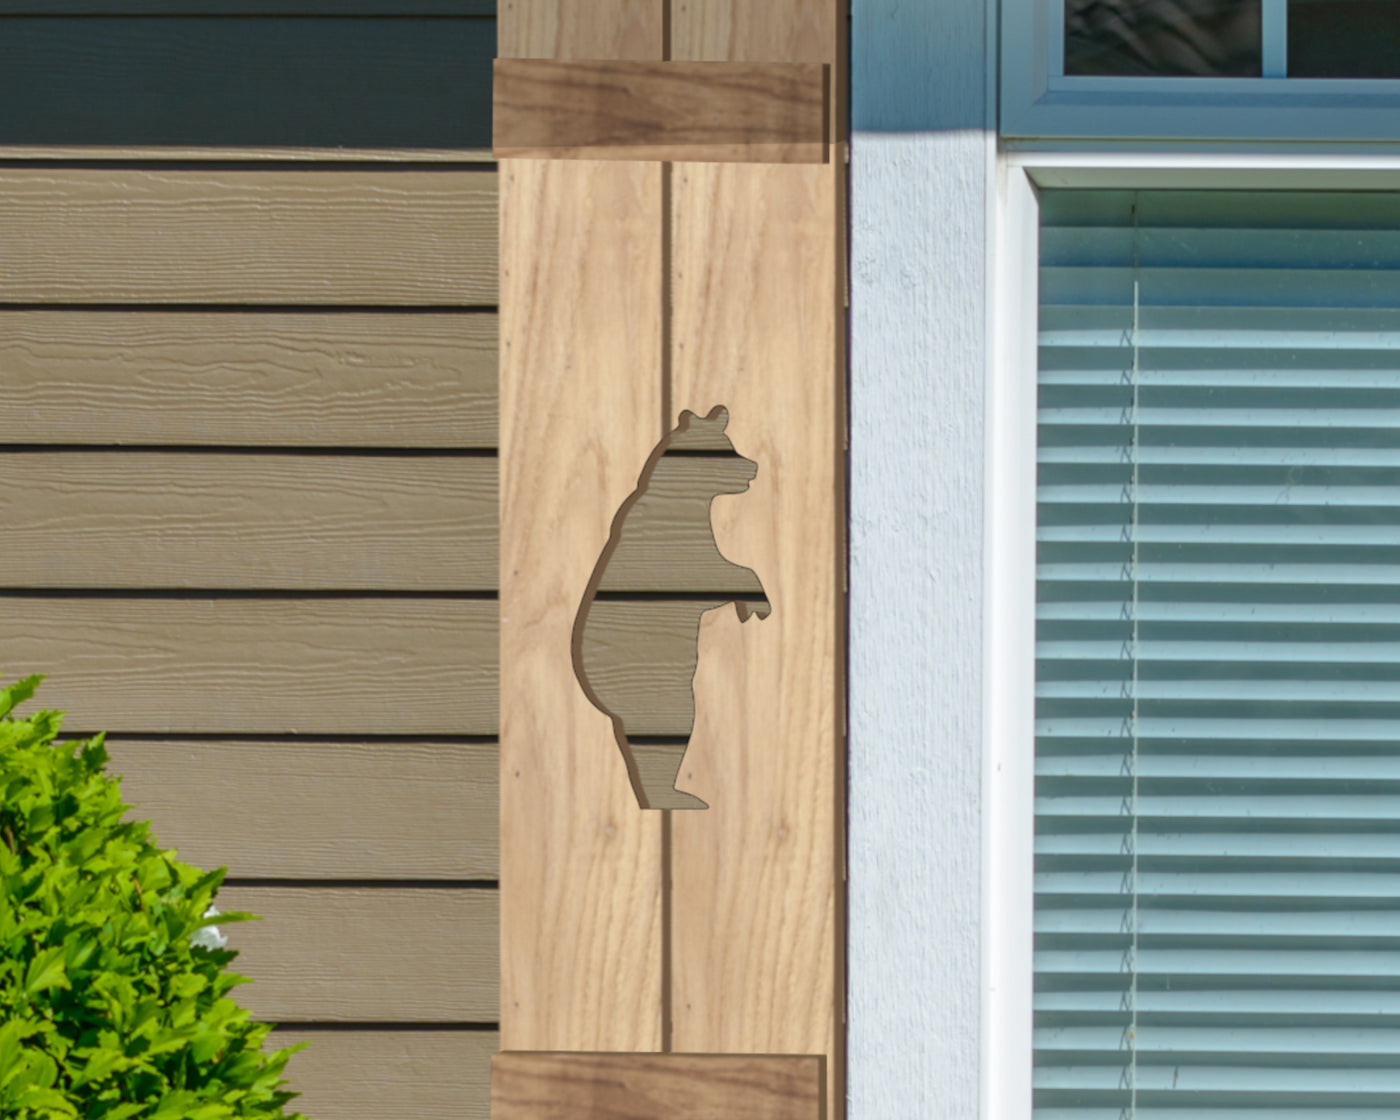 Wooden Window Shutter - Standing Bear Design